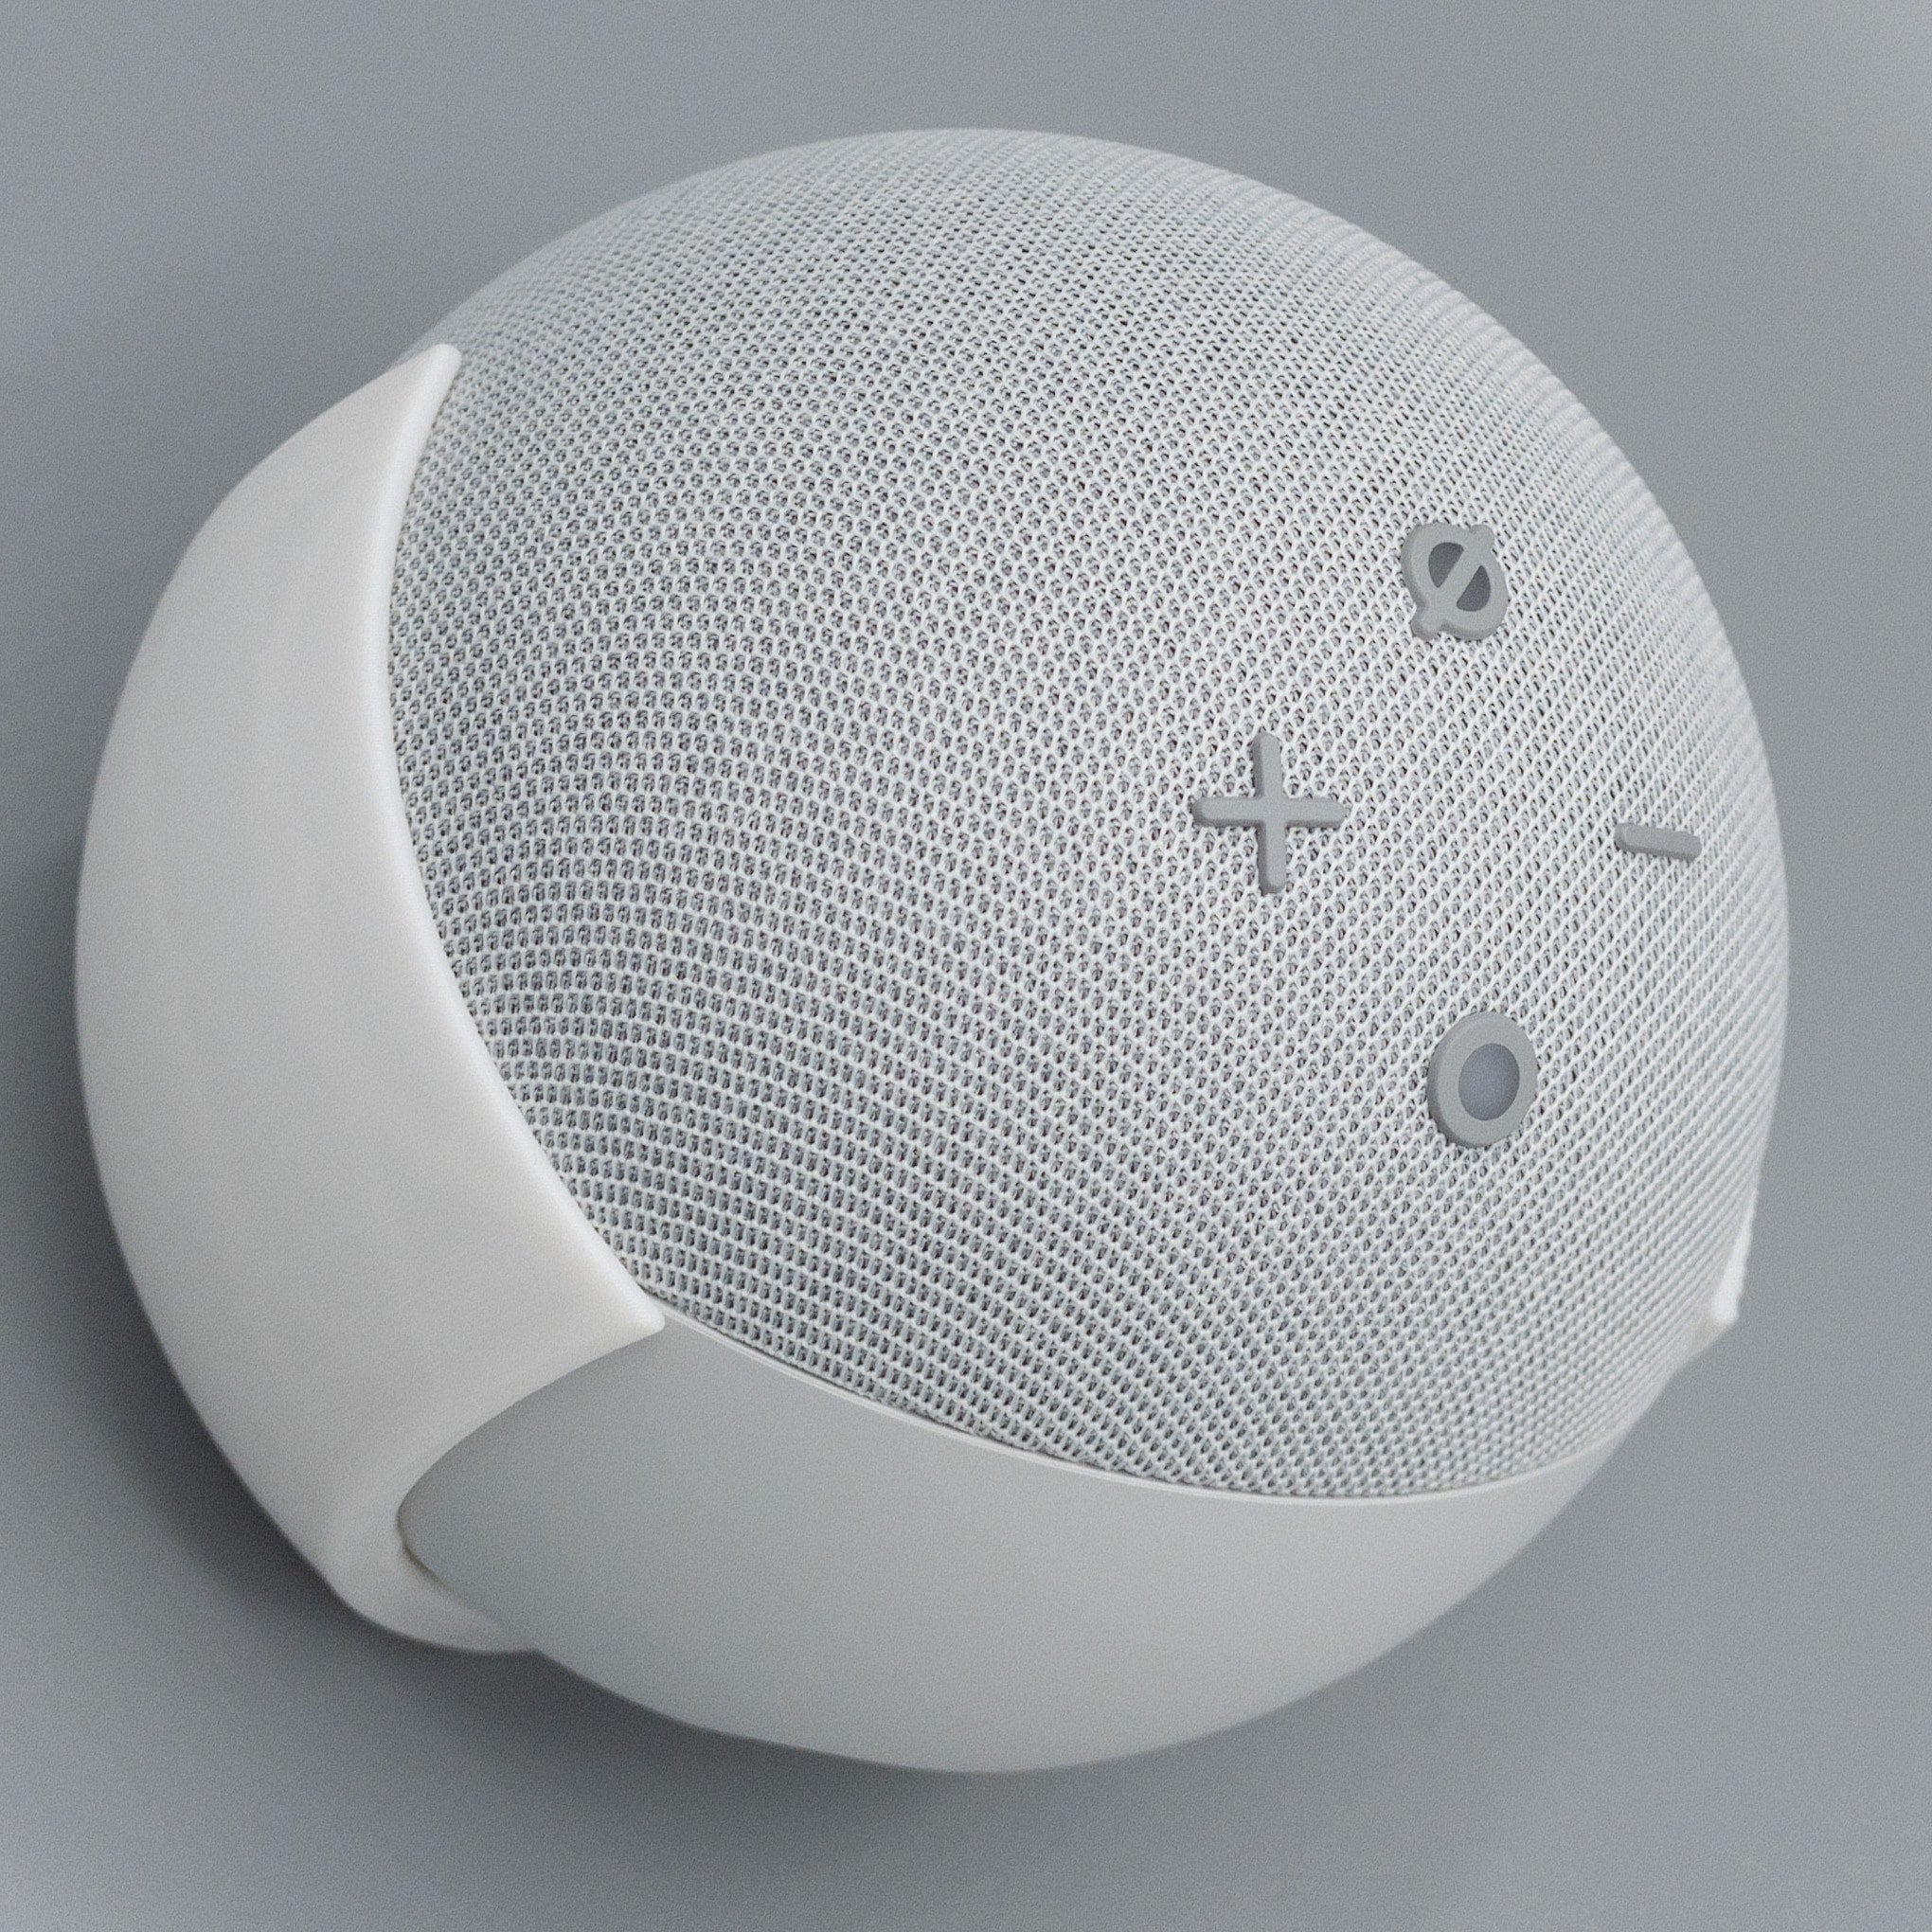 Wandhalterung für Echo Dot 3 Generation Gen Smart Speaker Stand Bracket Mount 